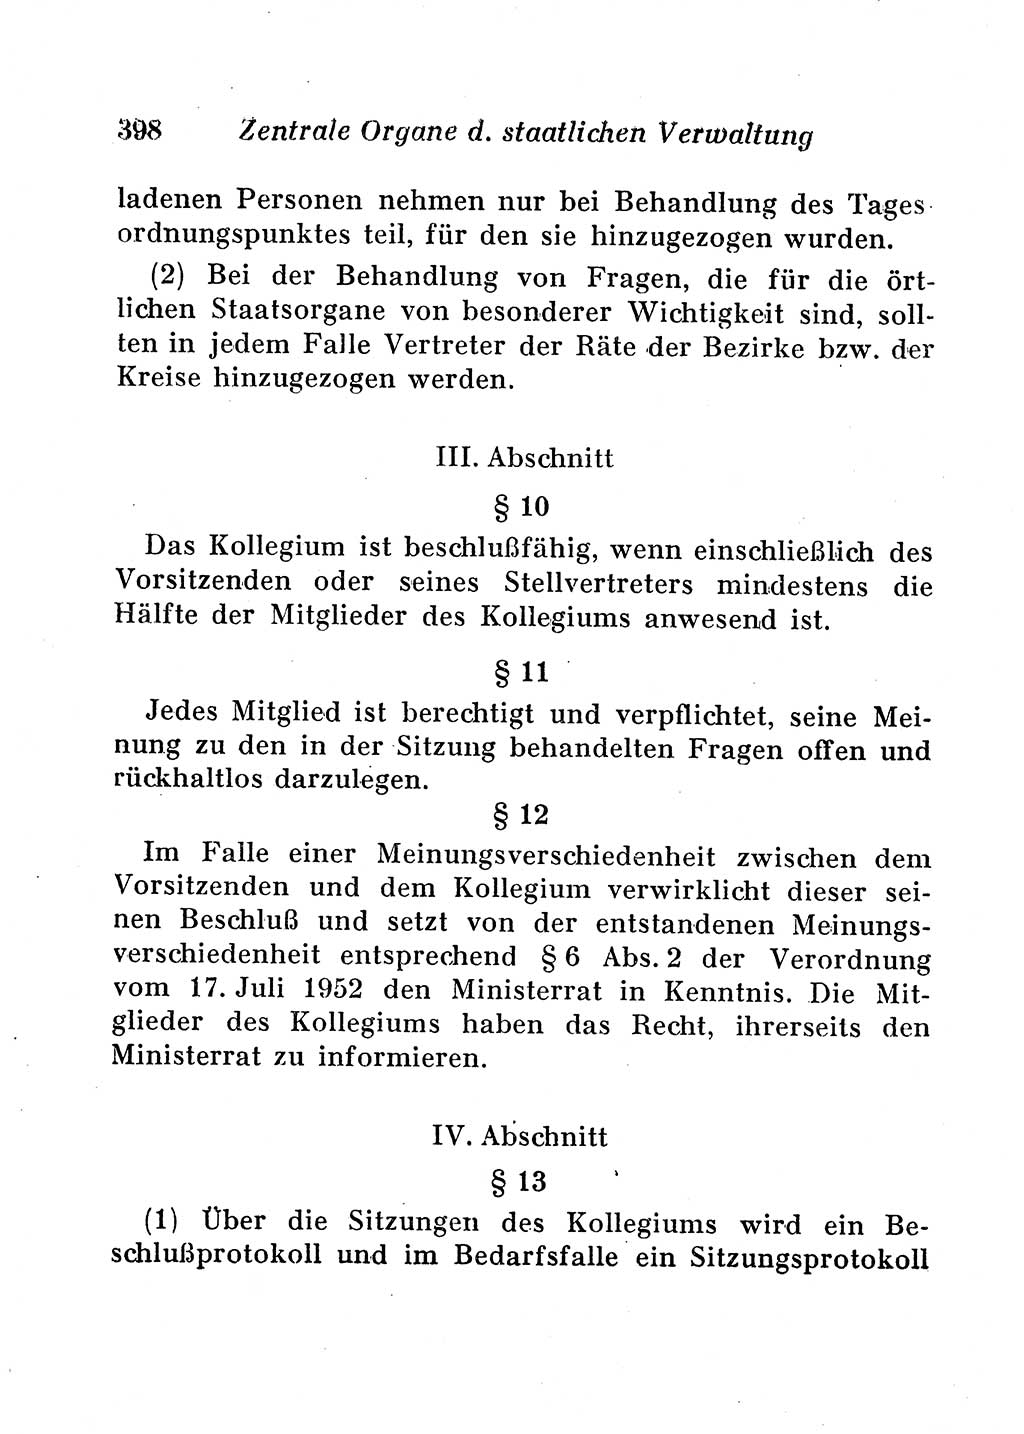 Staats- und verwaltungsrechtliche Gesetze der Deutschen Demokratischen Republik (DDR) 1958, Seite 398 (StVerwR Ges. DDR 1958, S. 398)